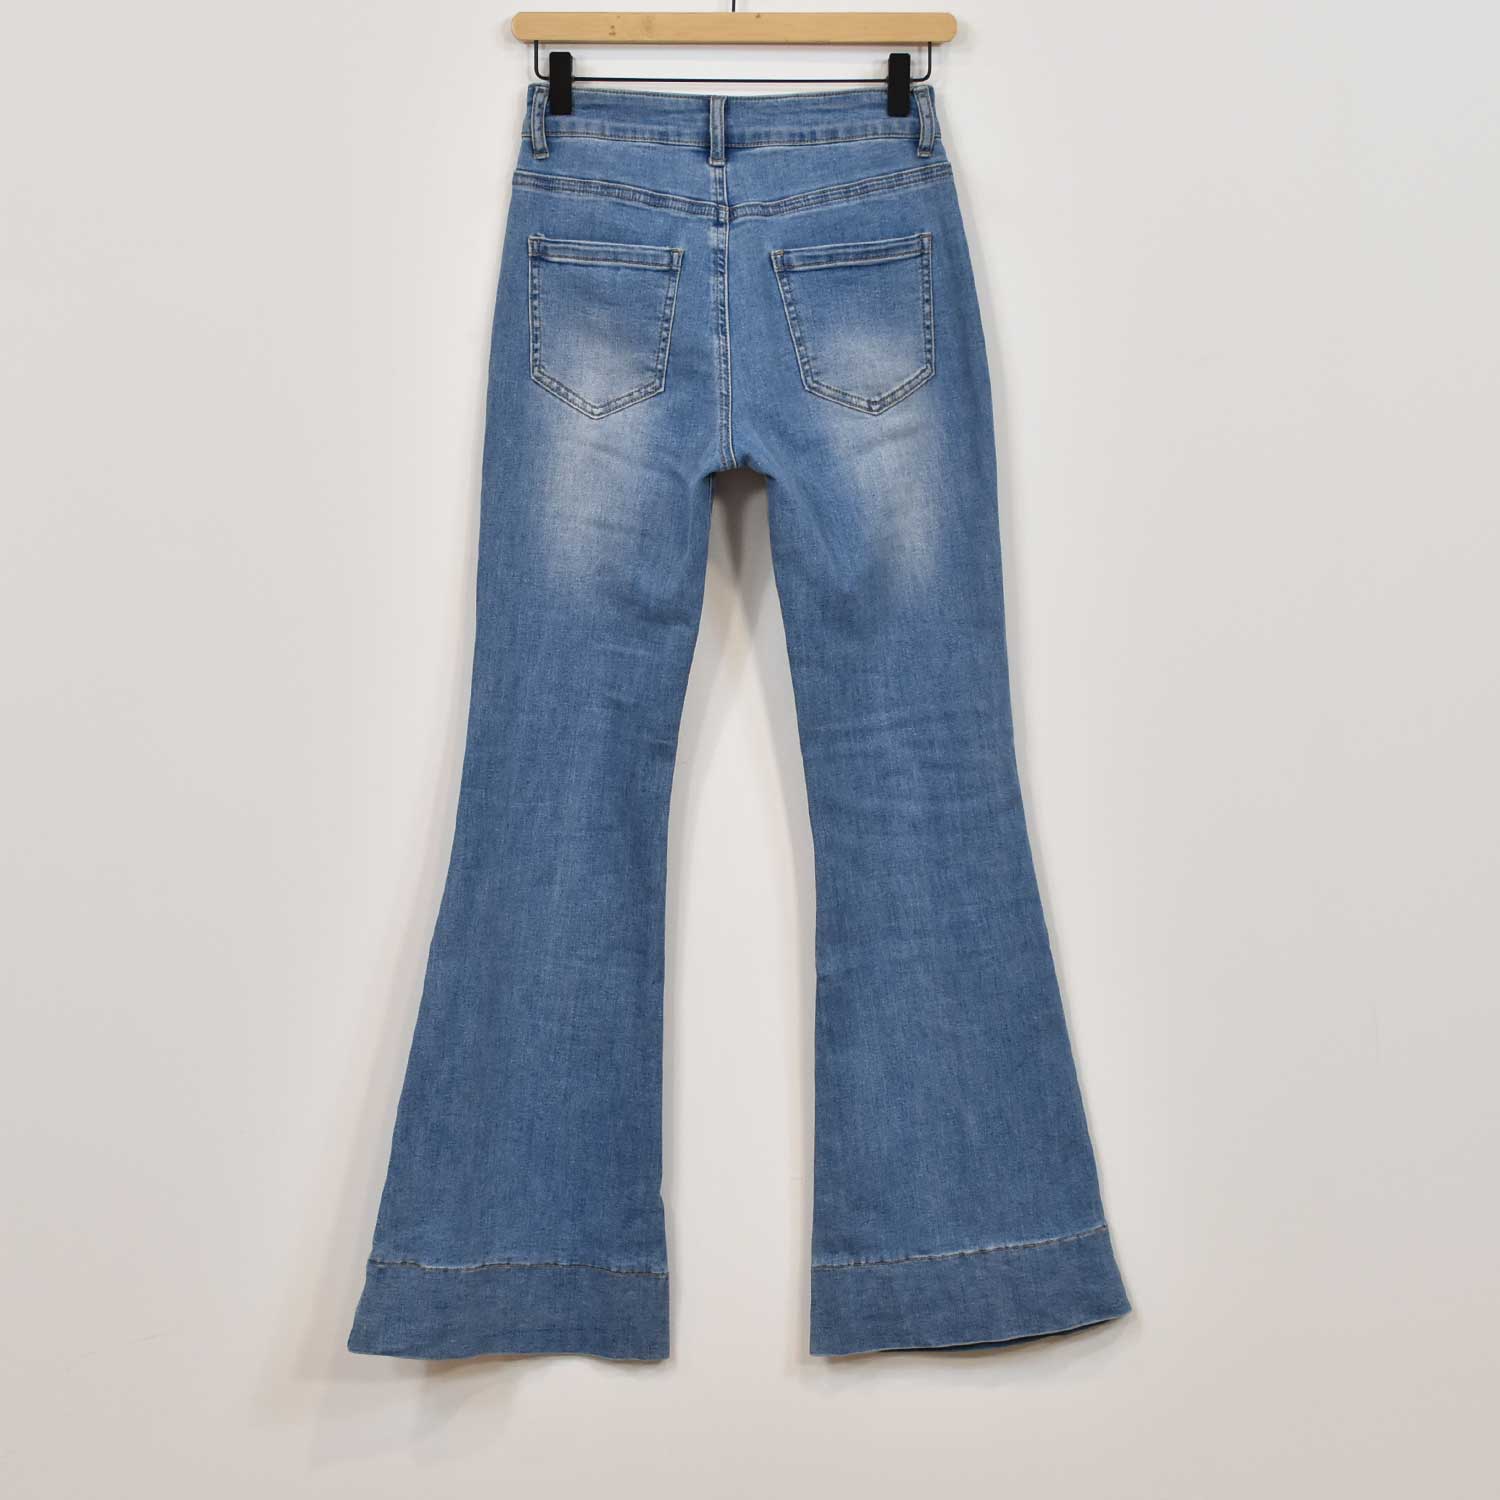 Jeans Cloche poches